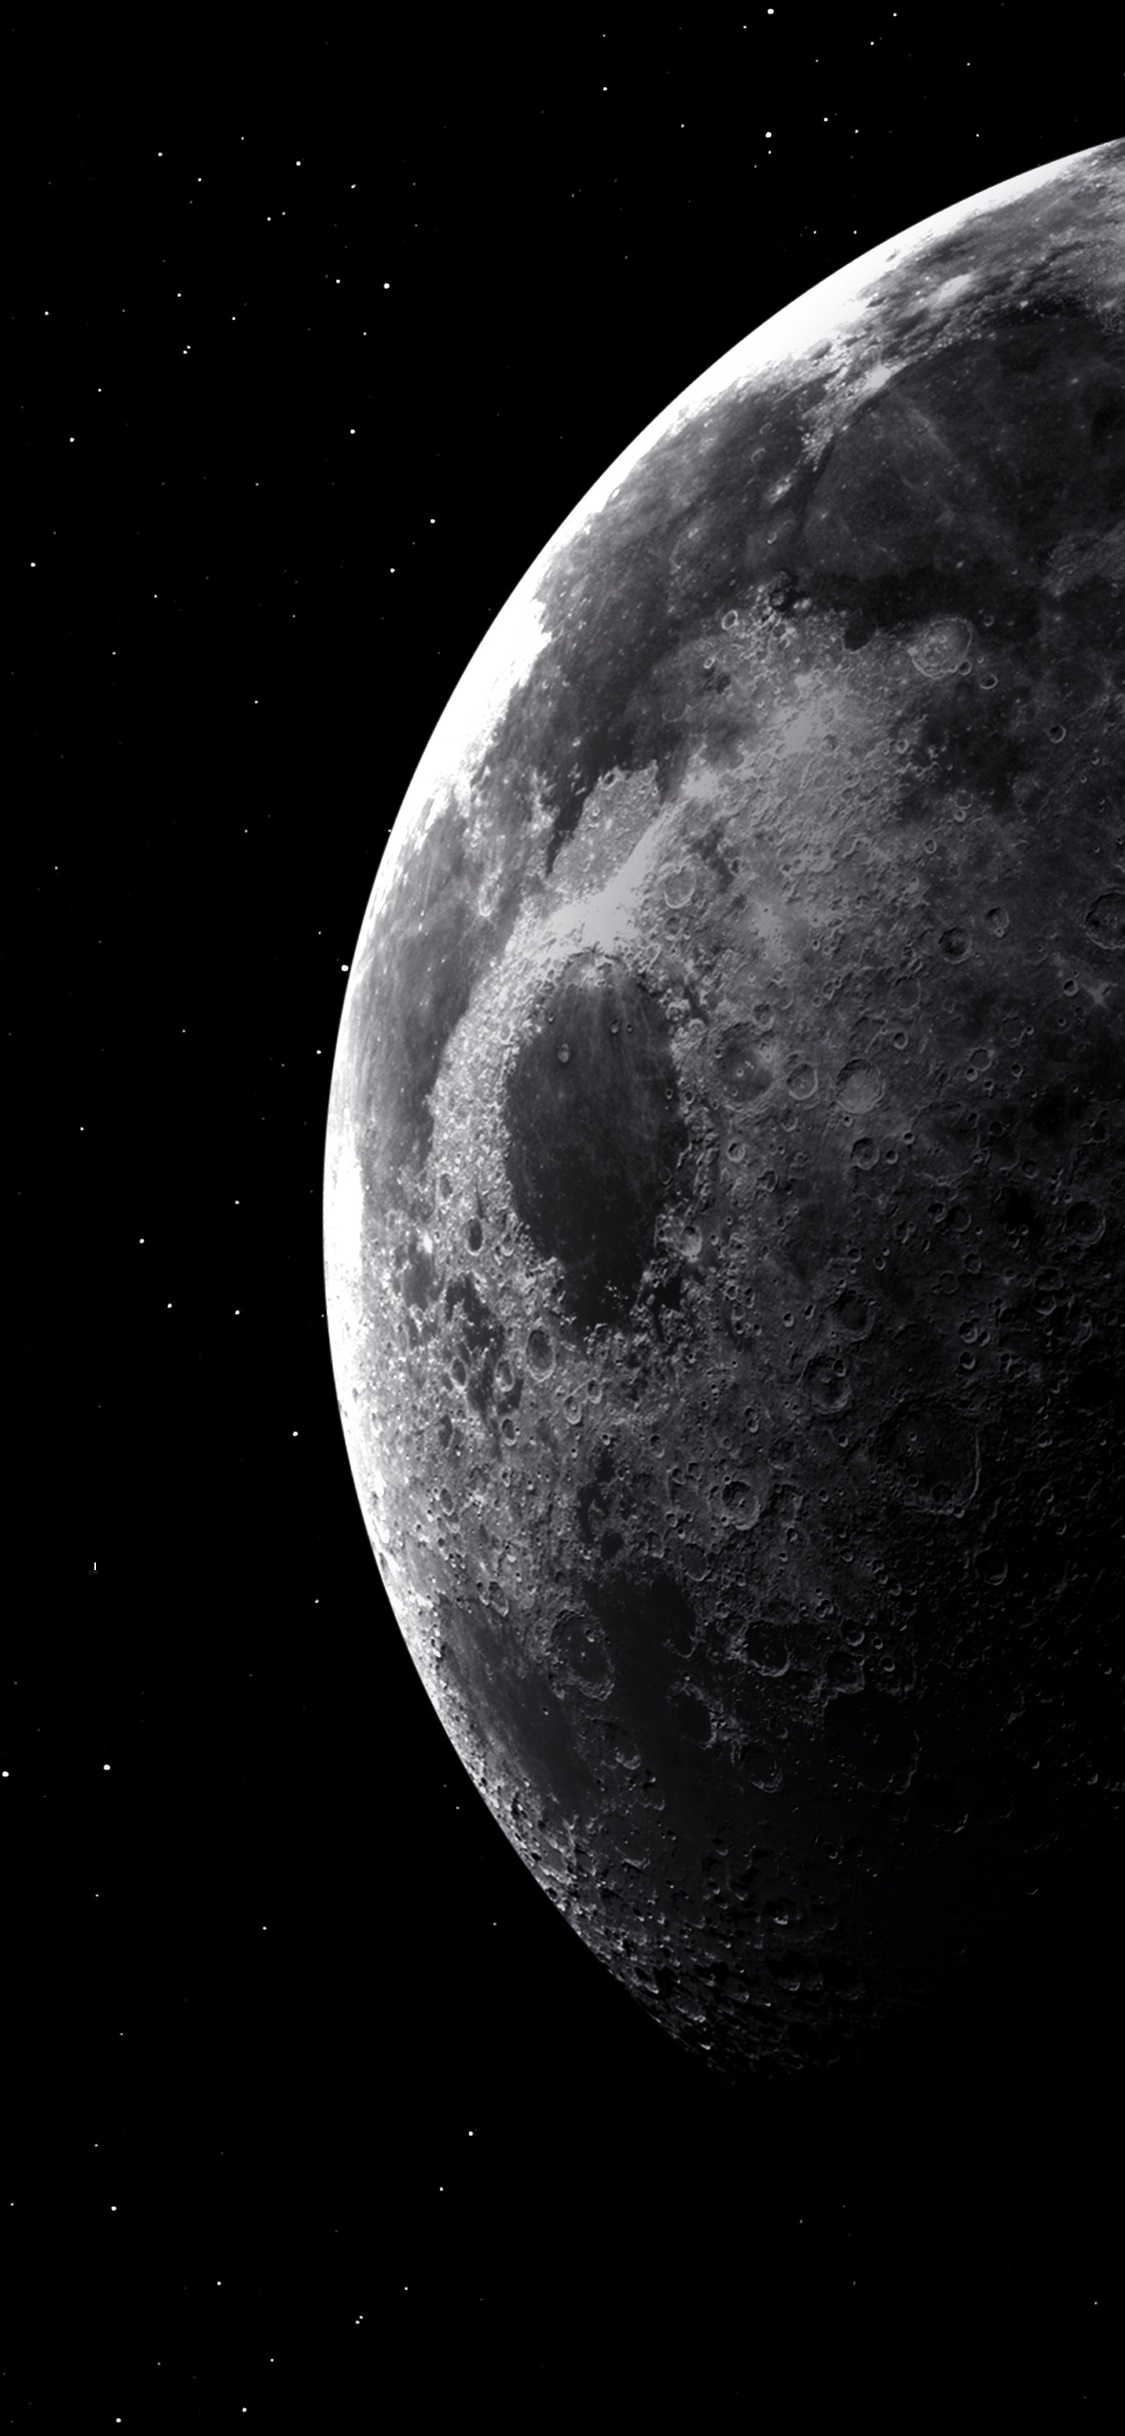 fond d'écran lune iphone,lune,photographier,objet astronomique,cosmos,atmosphère